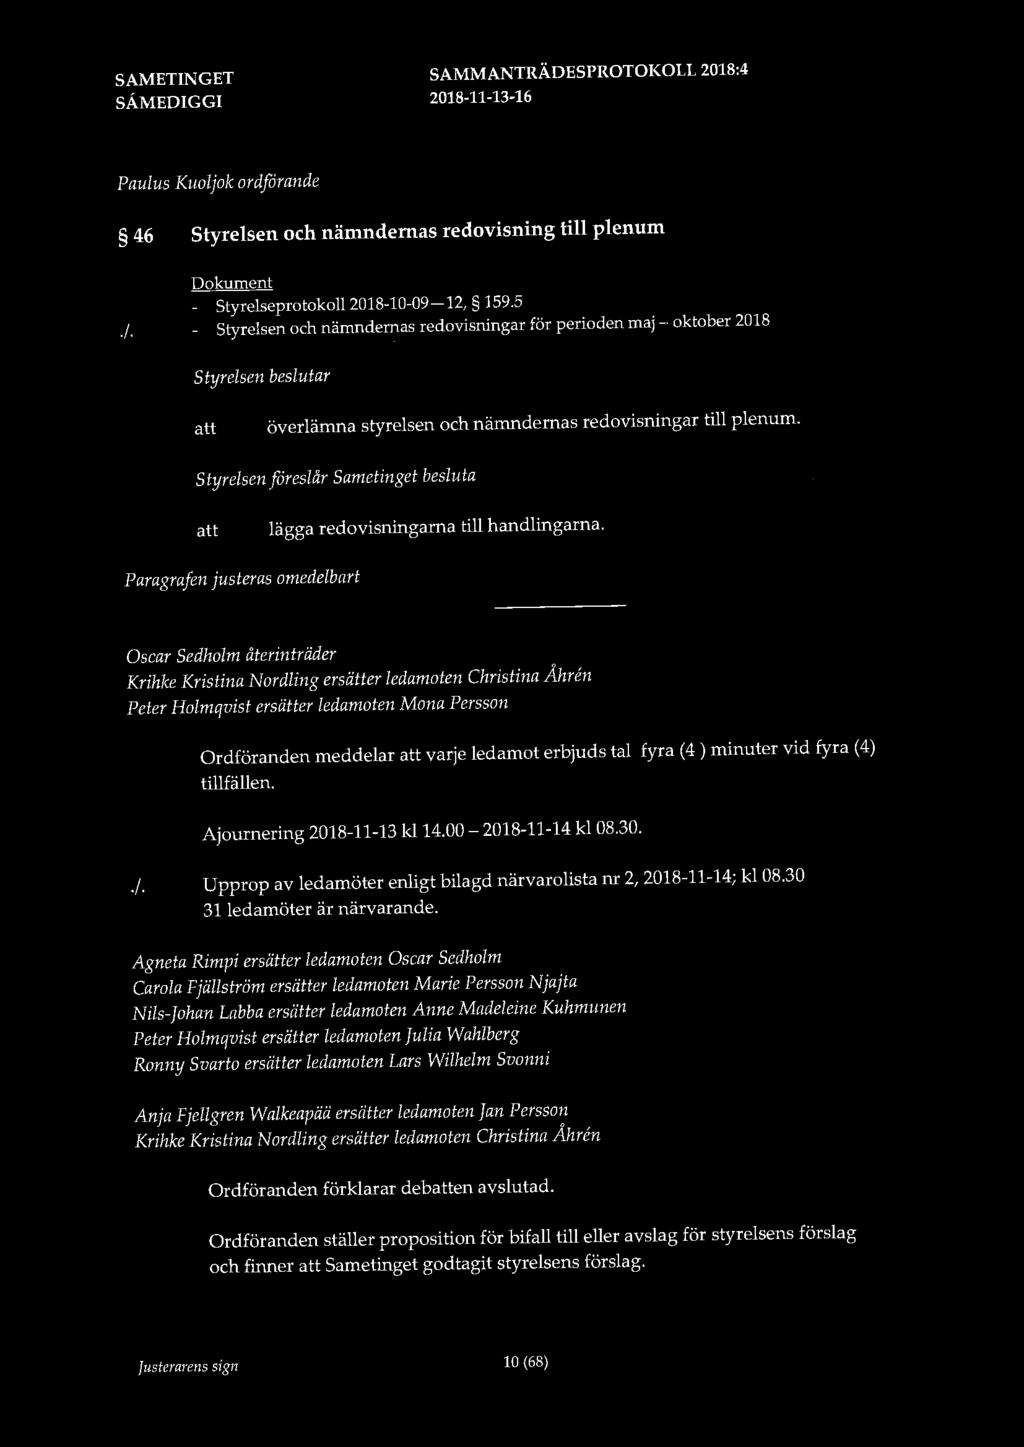 Paulus Kuoljok ordförande 46 Styrelsen och nämndernas redovisning till plenum Dokument - Styrelseprotokoll 2018-10-09-12, 159.5./.